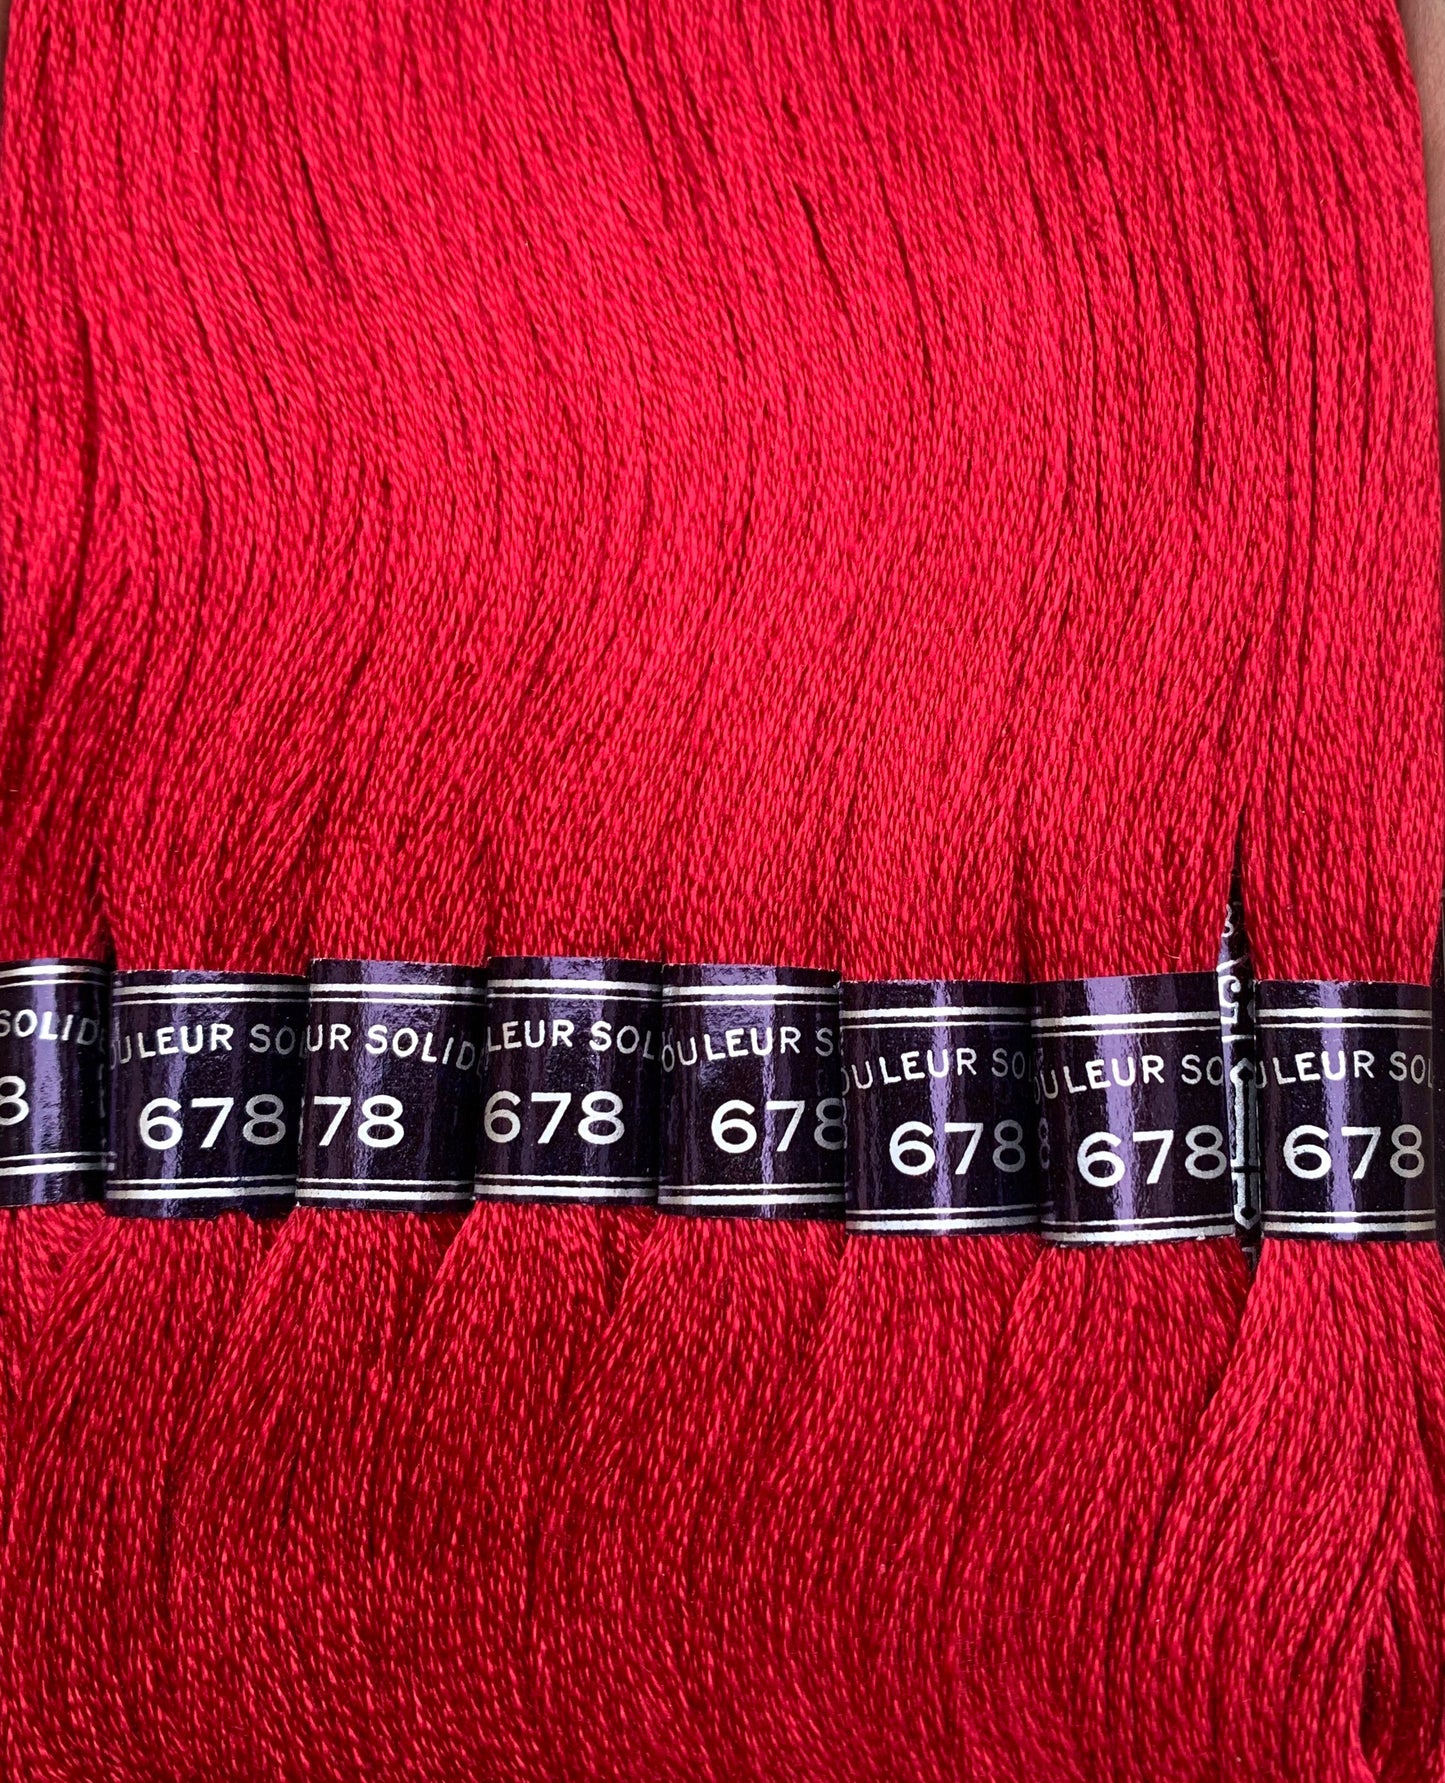 Vintage CARTIER-BRESSON Crimson Red (678) Cotton Embroidery Thread 24 skeins x 8m